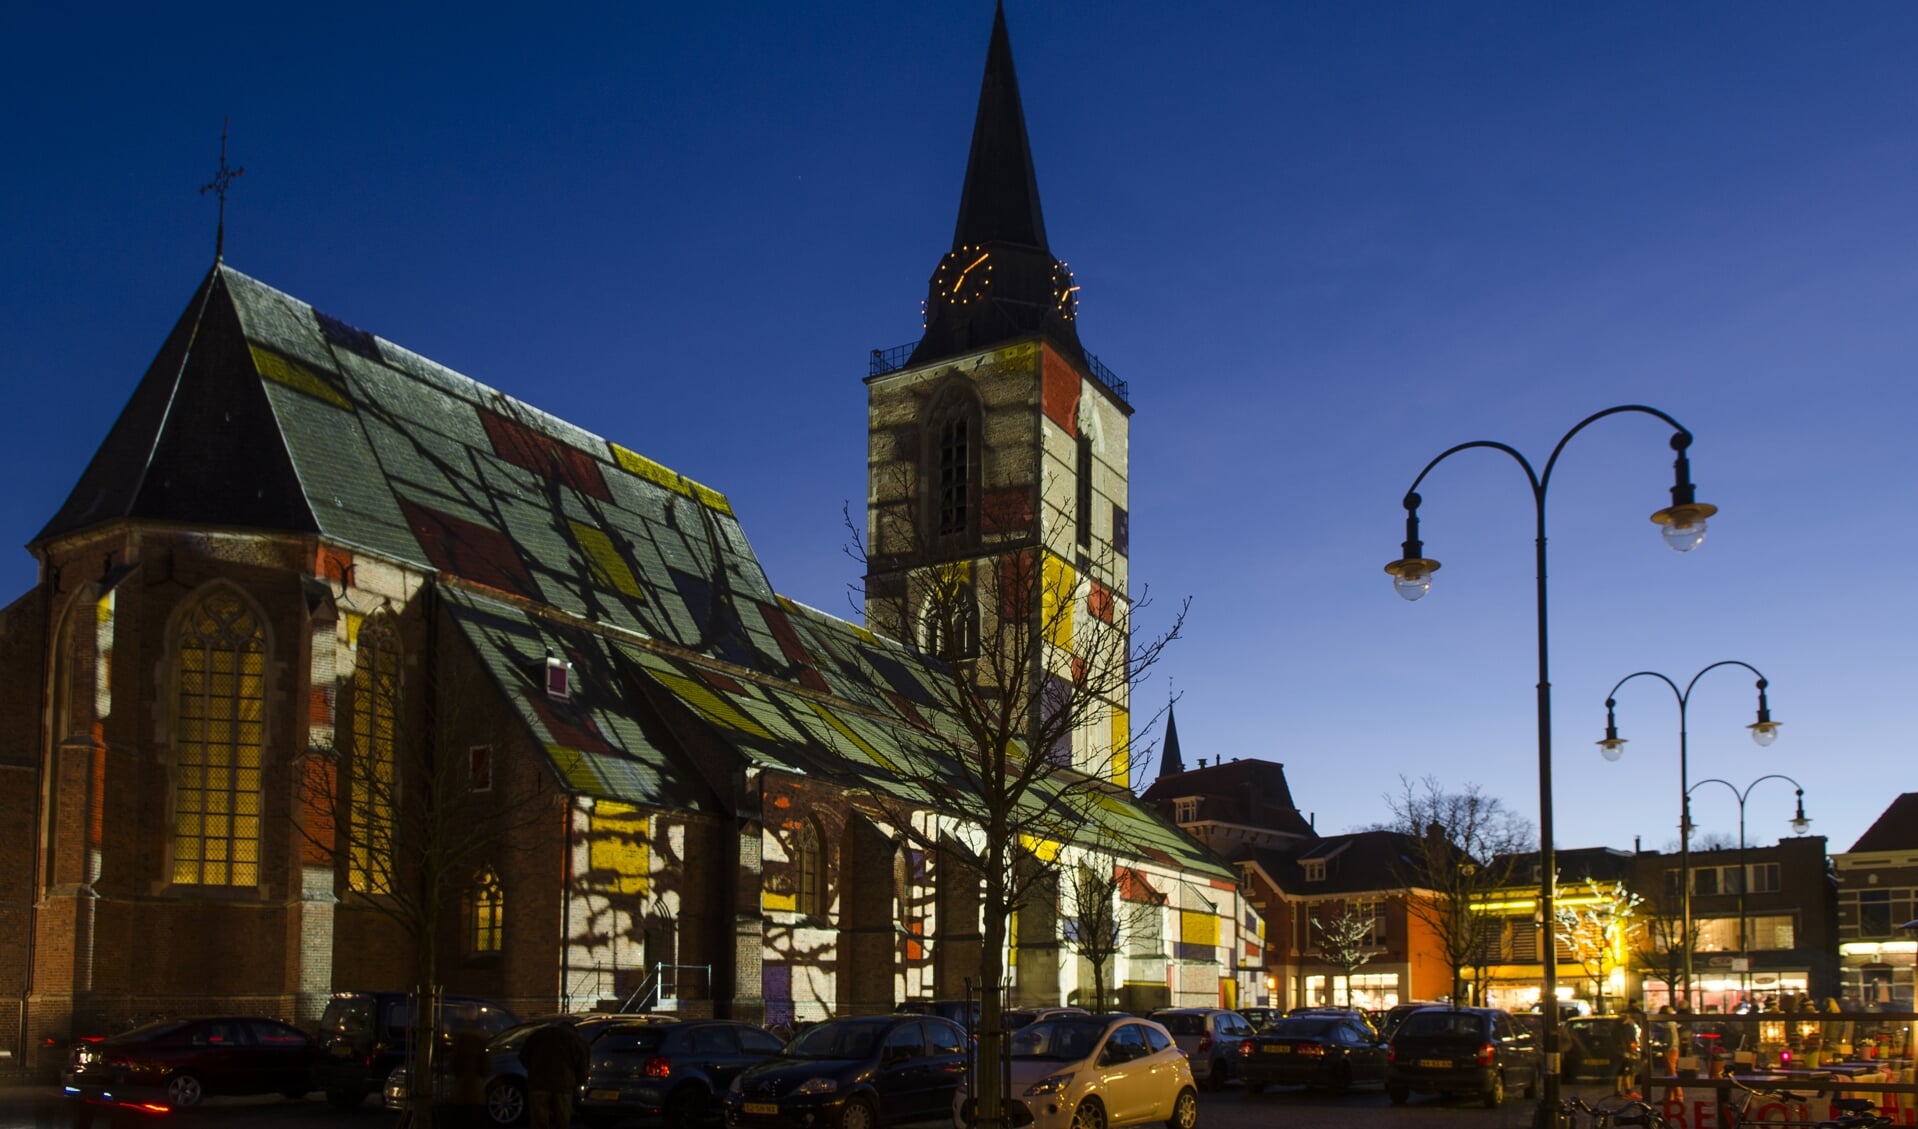 De jacobskerk in Mondriaan-kleuren. Foto: Gerben Olthof